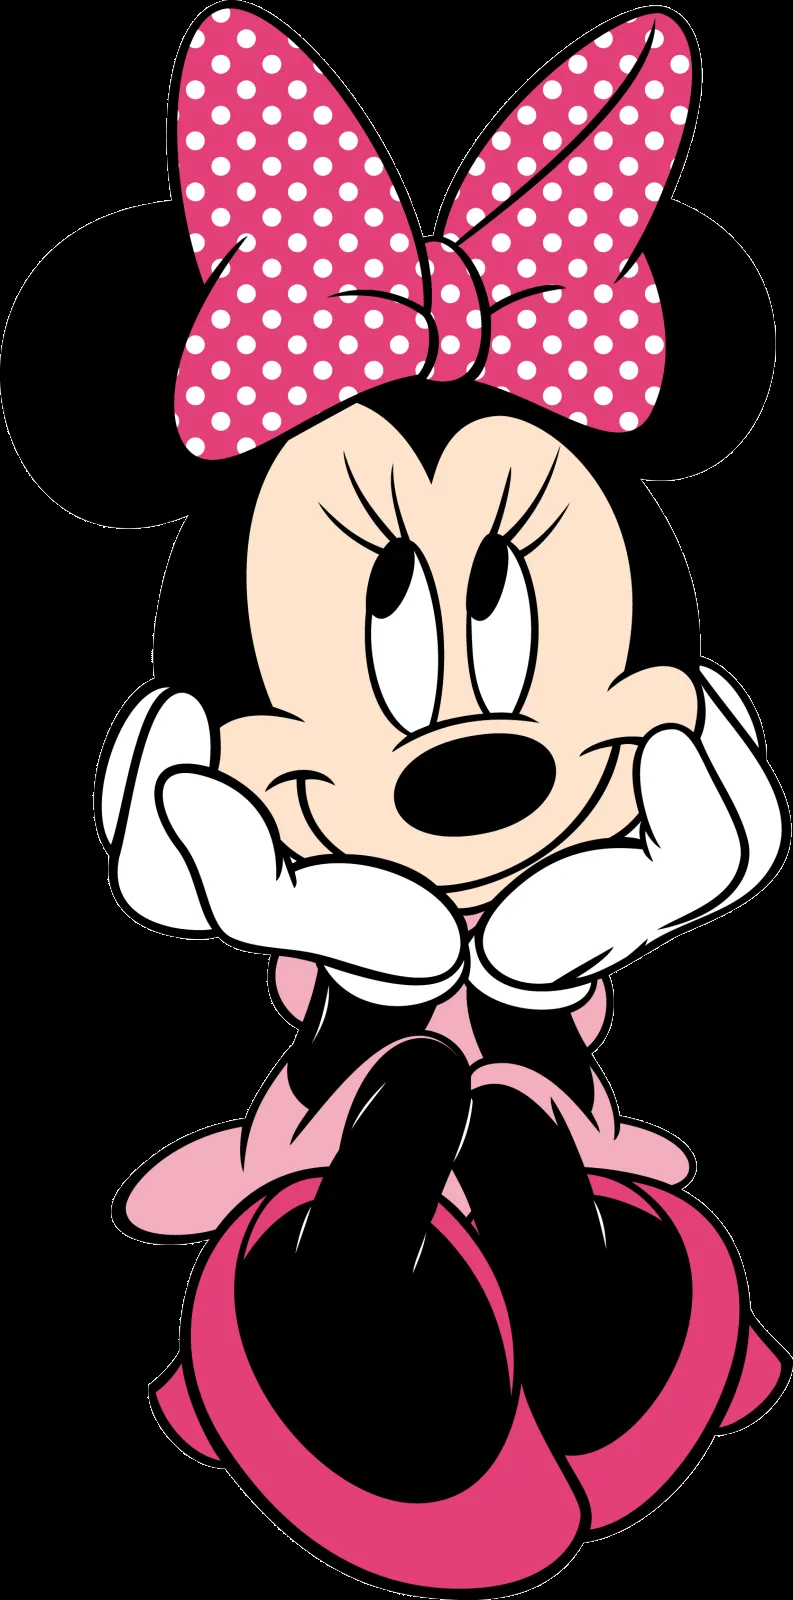 Descargar Imágenes Gratis: Minnie Mouse PNG sin fondo | bianka ...